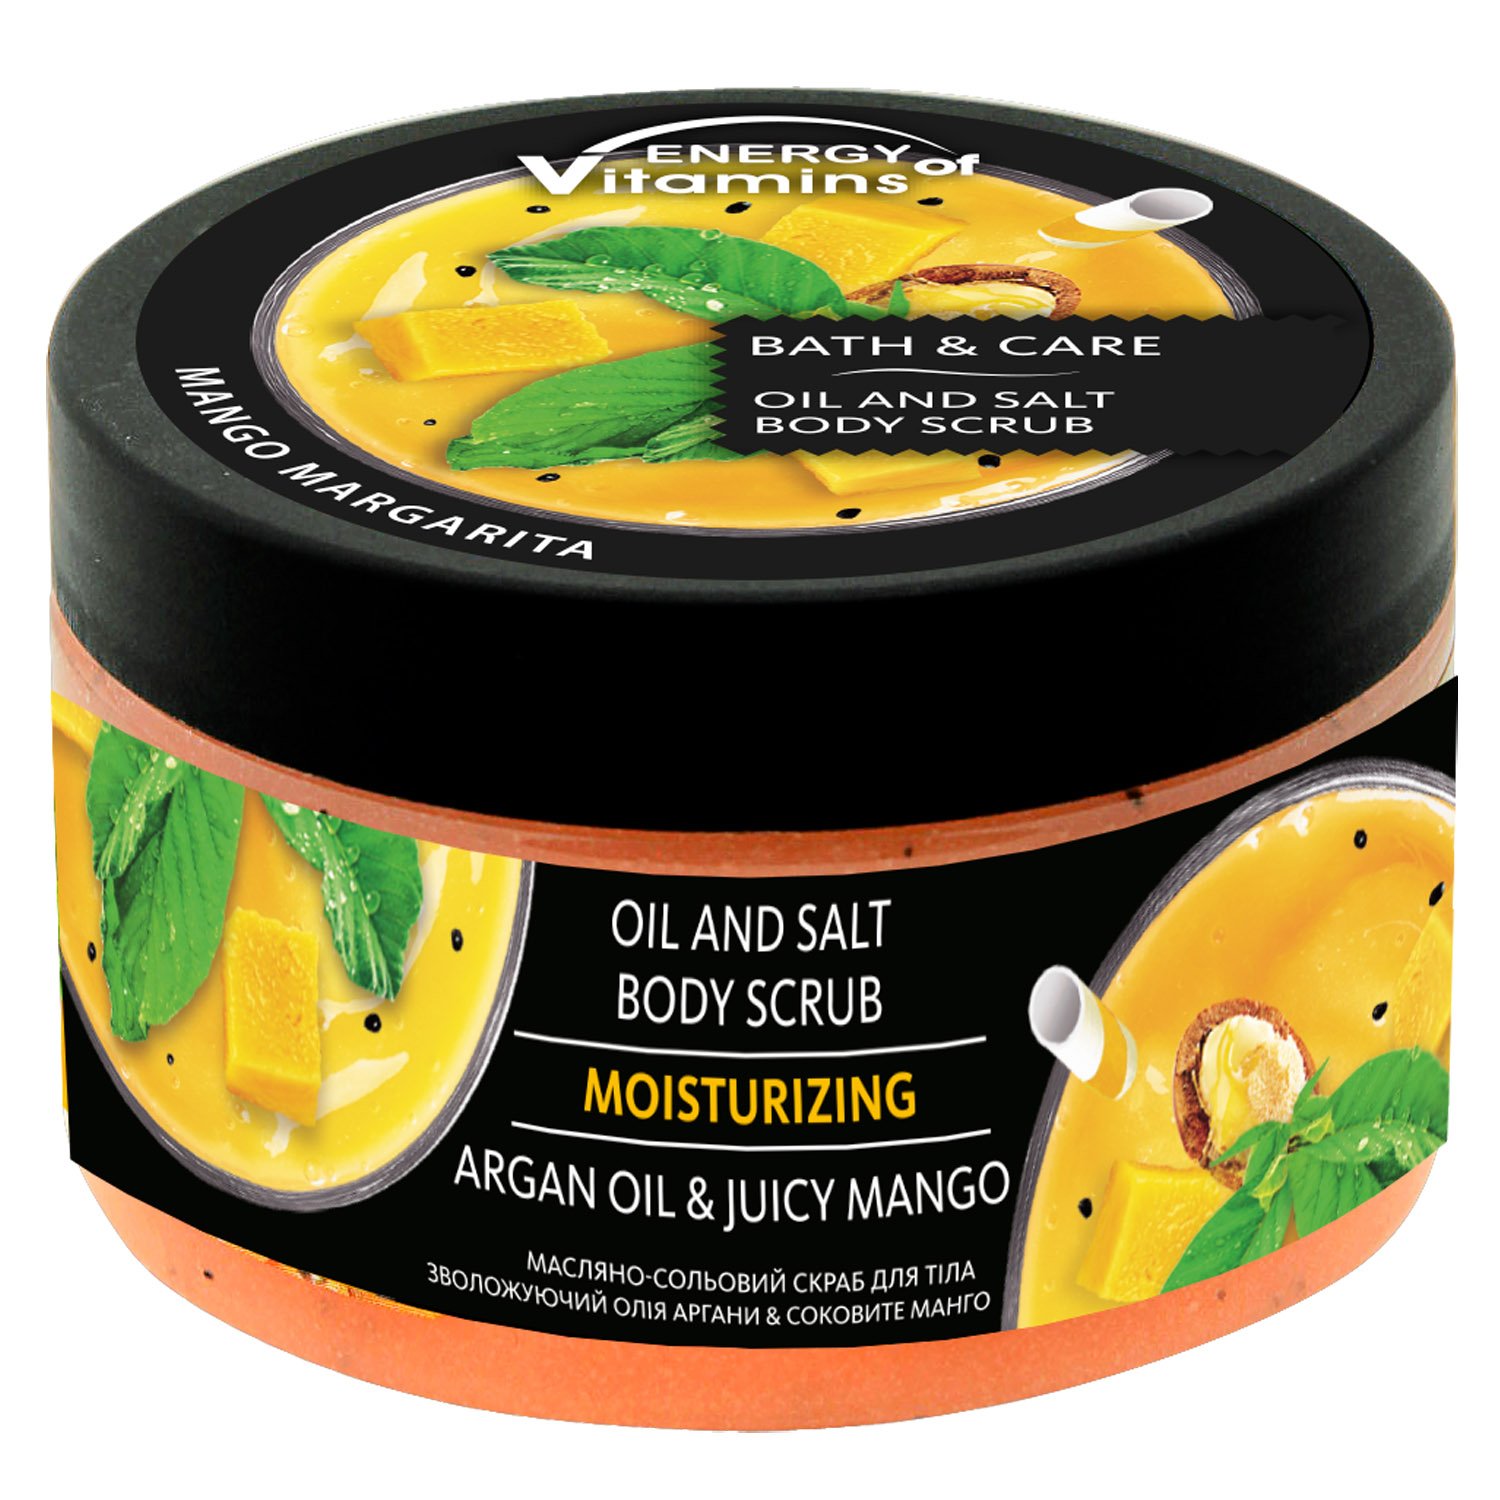 Скраб для тела Energy of Vitamins Масло арганы и сочное манго масляно-солевой увлажняющий, 250 мл - фото 1